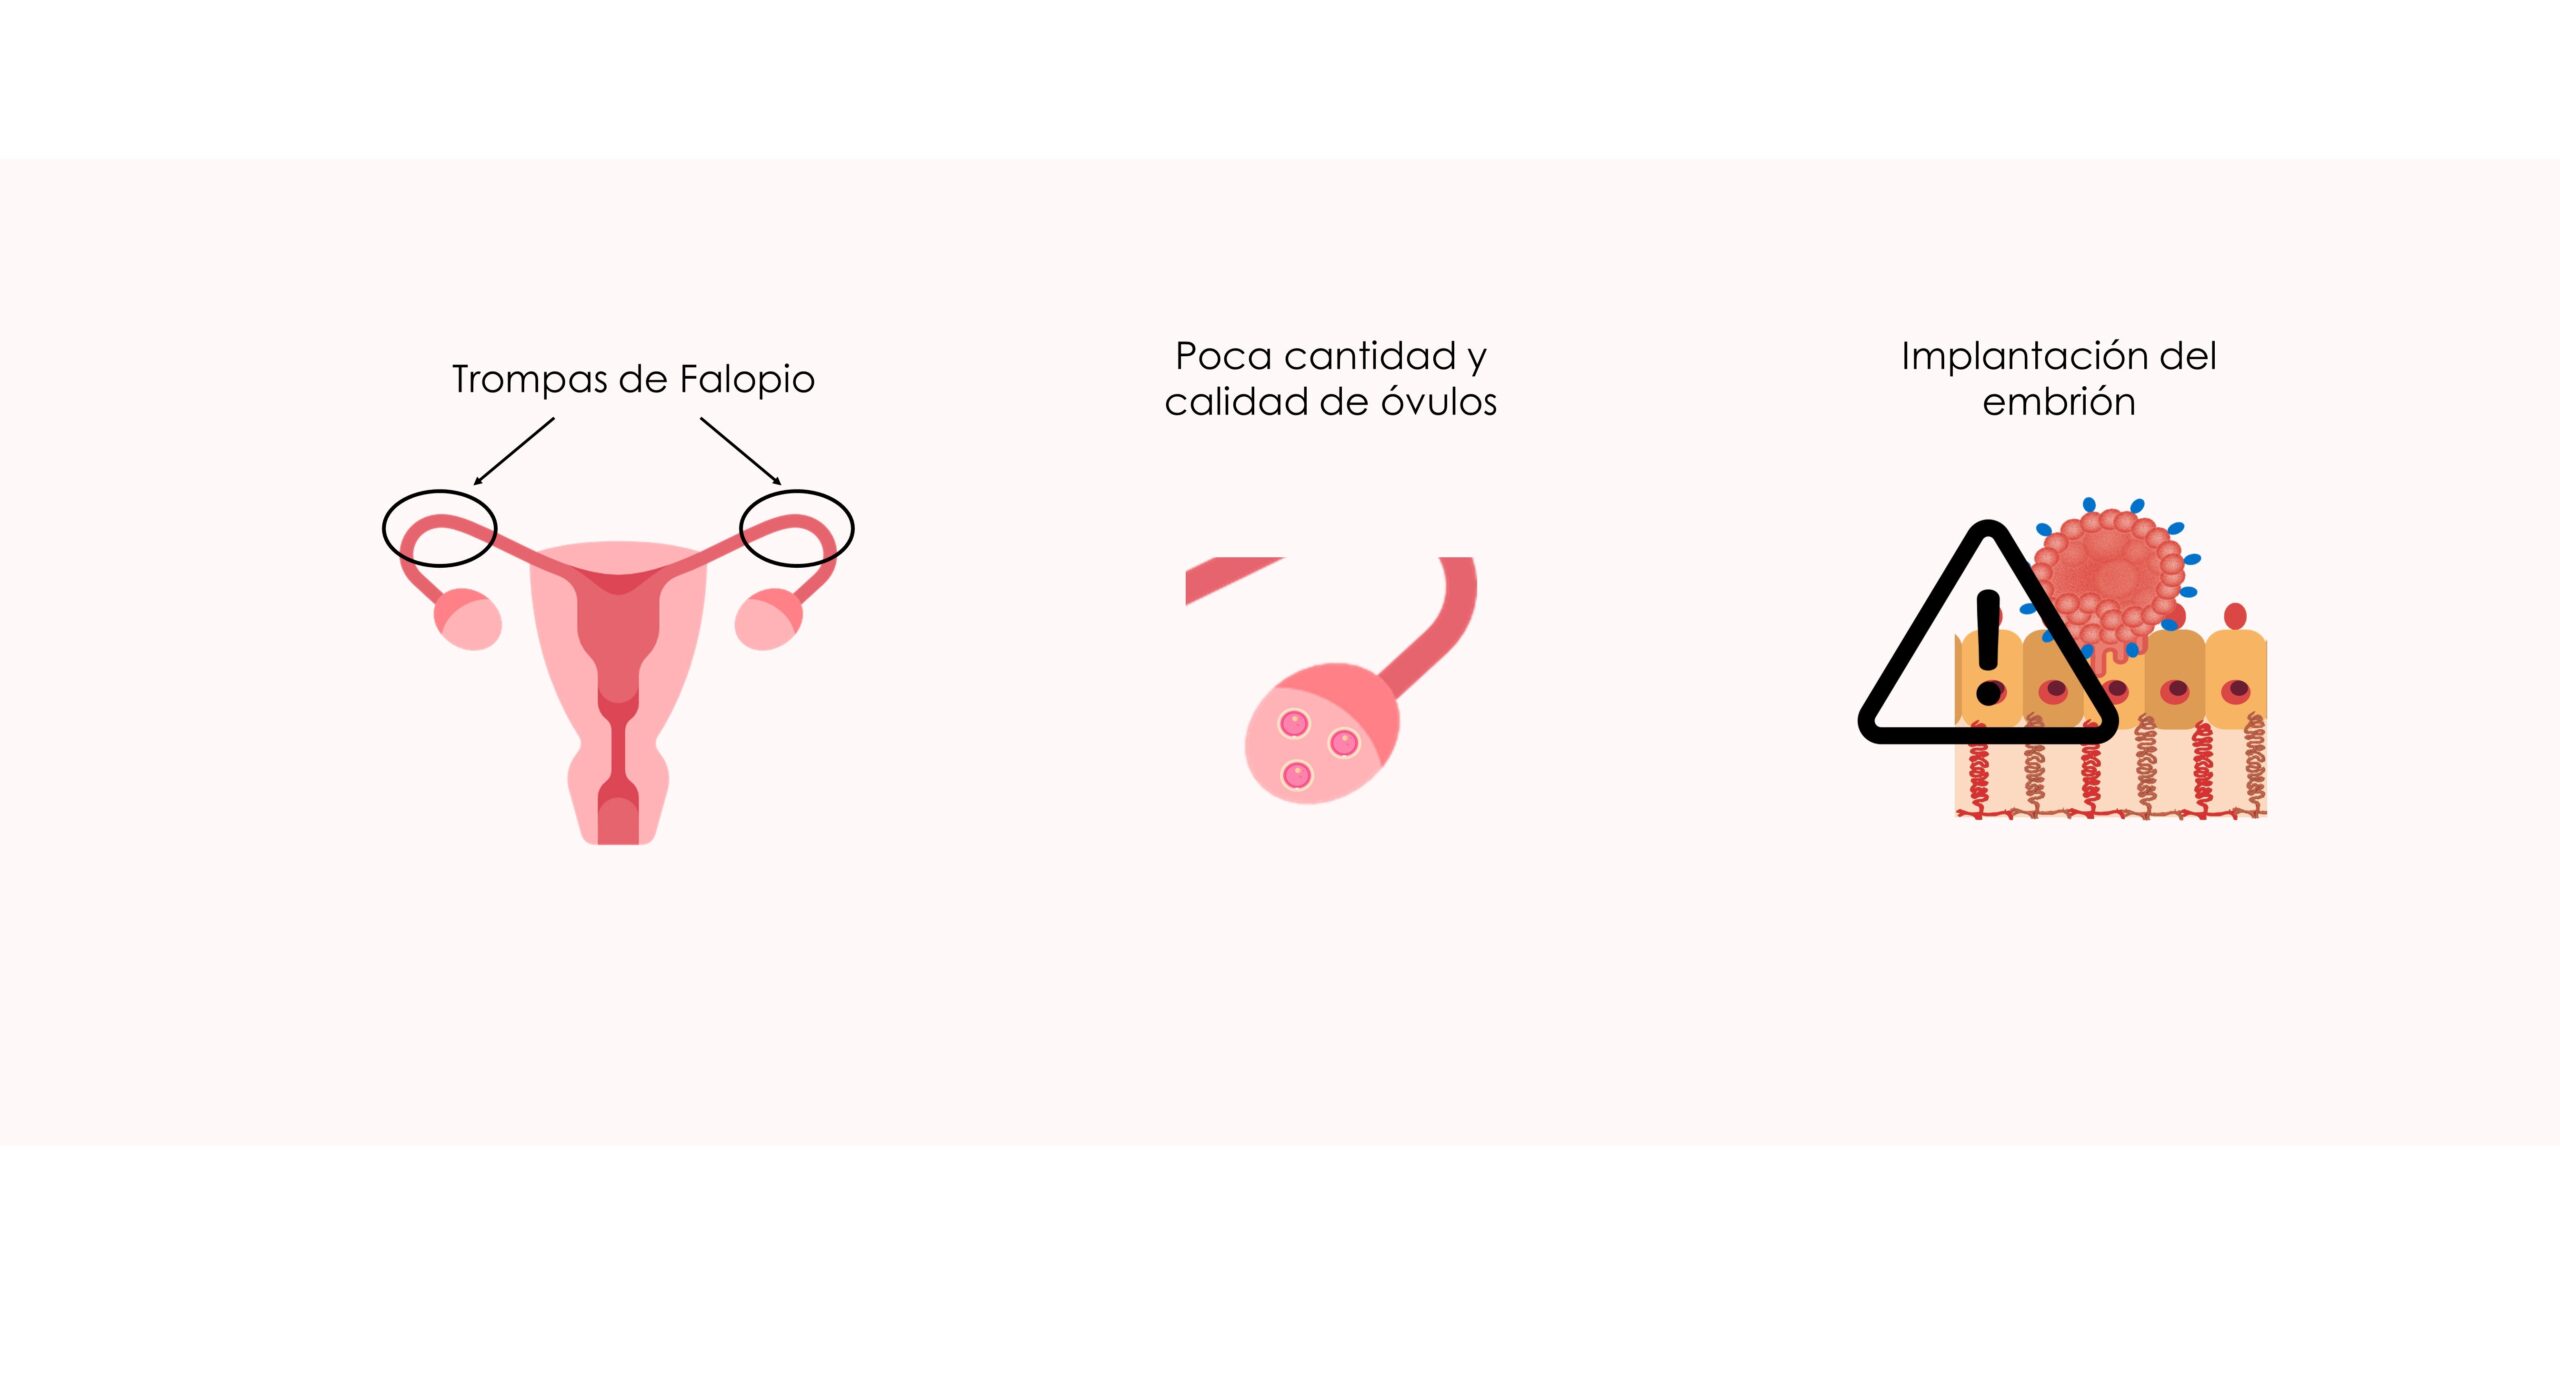 La endometriosis se asocia a la infertilidad por varios factores: alteración de las trompas, de la reserva ovárica y de la implantación uterina